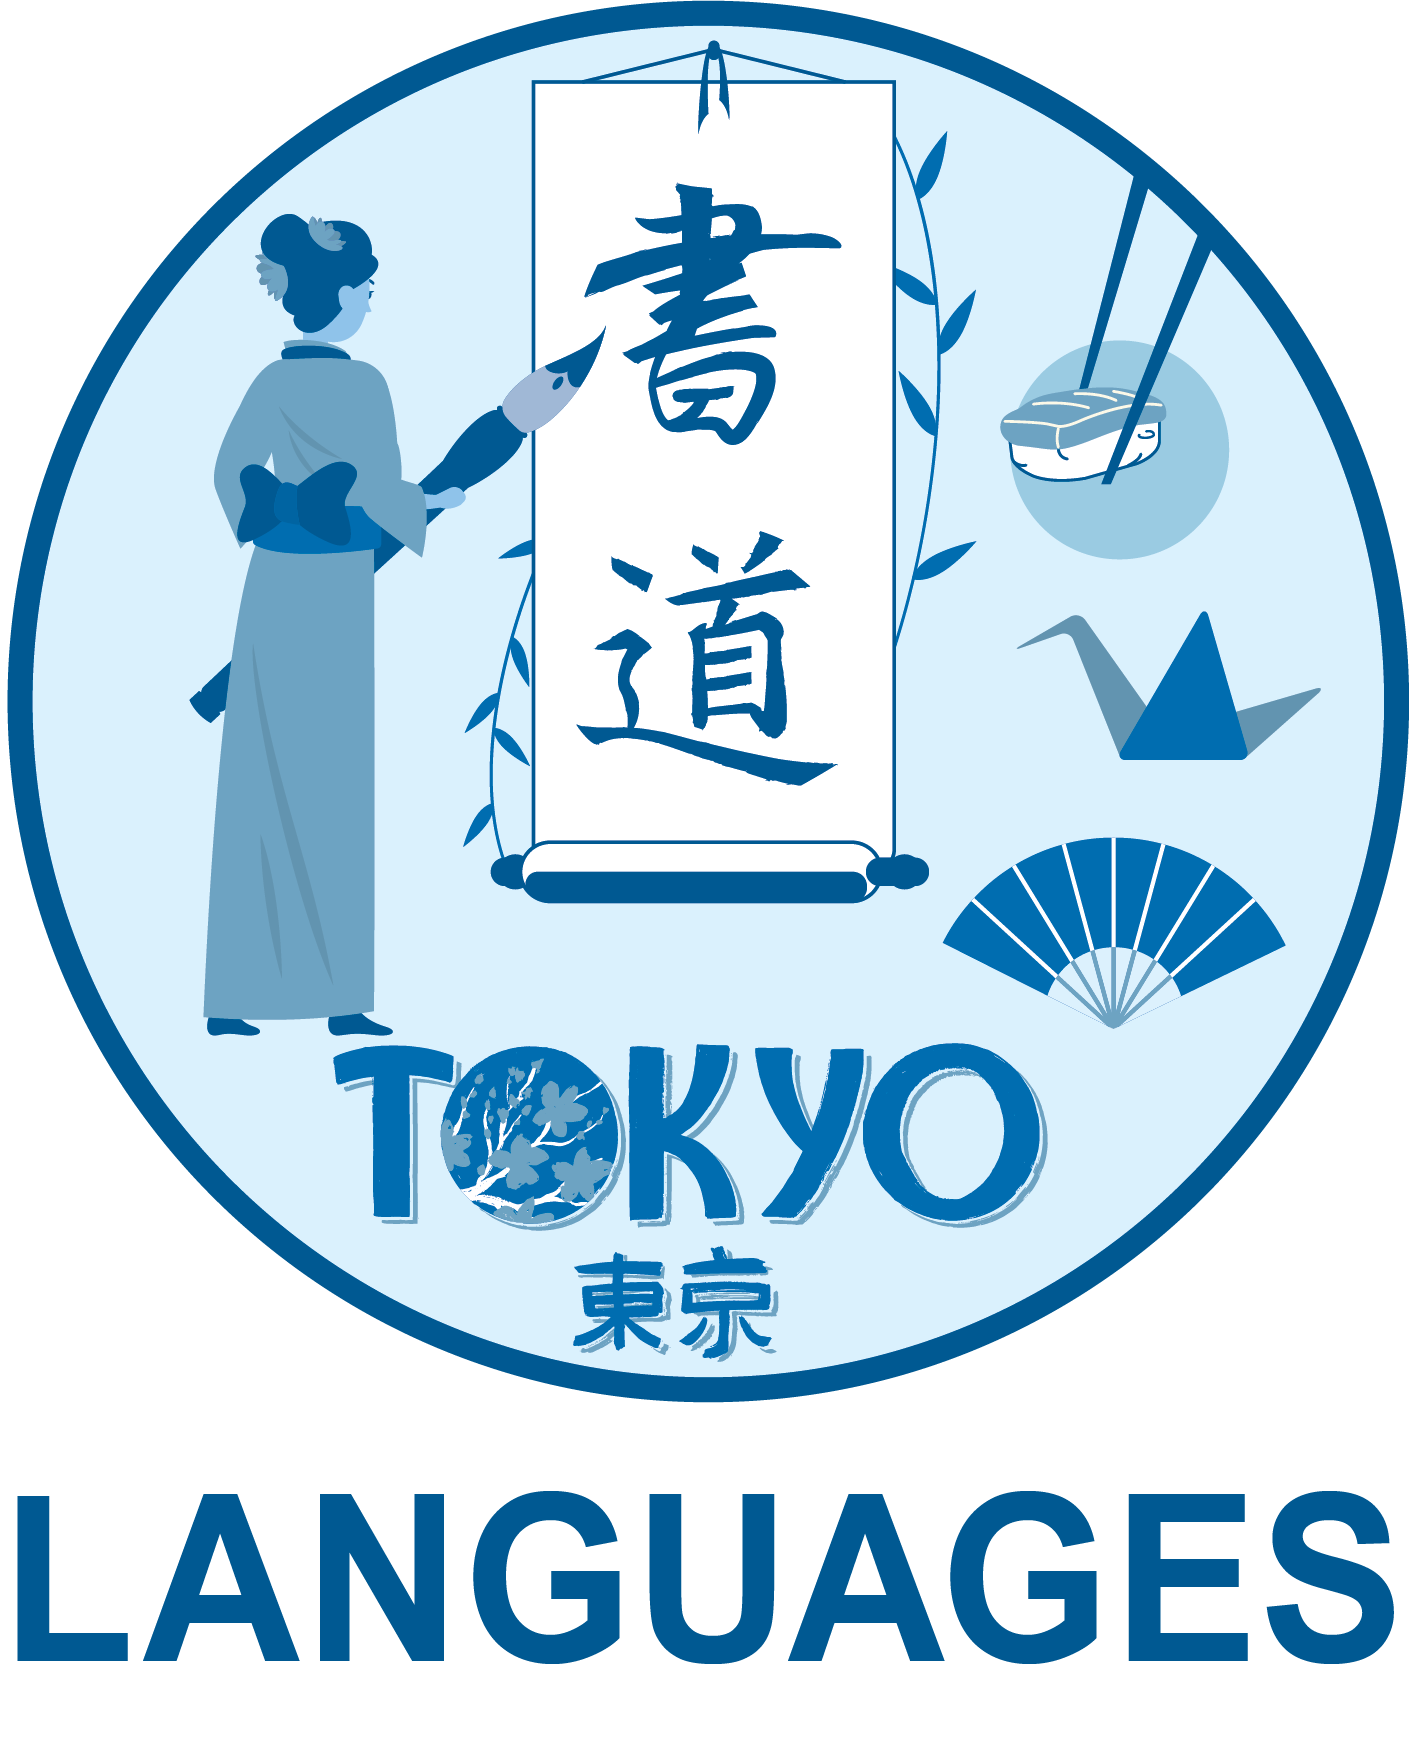 Languages Logo.png